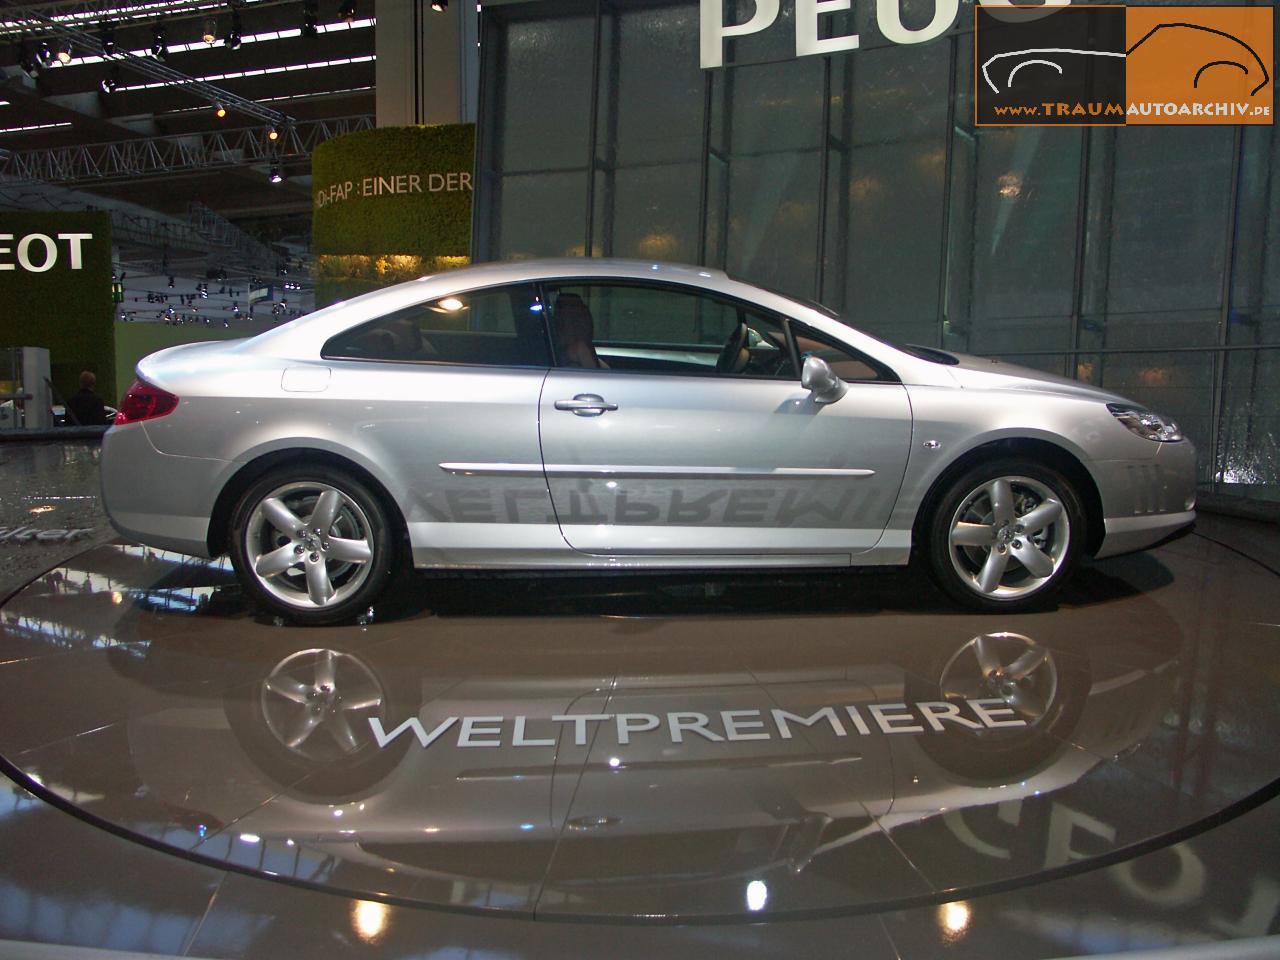 13 - Peugeot 407 Coupe '2005.jpg 135.8K